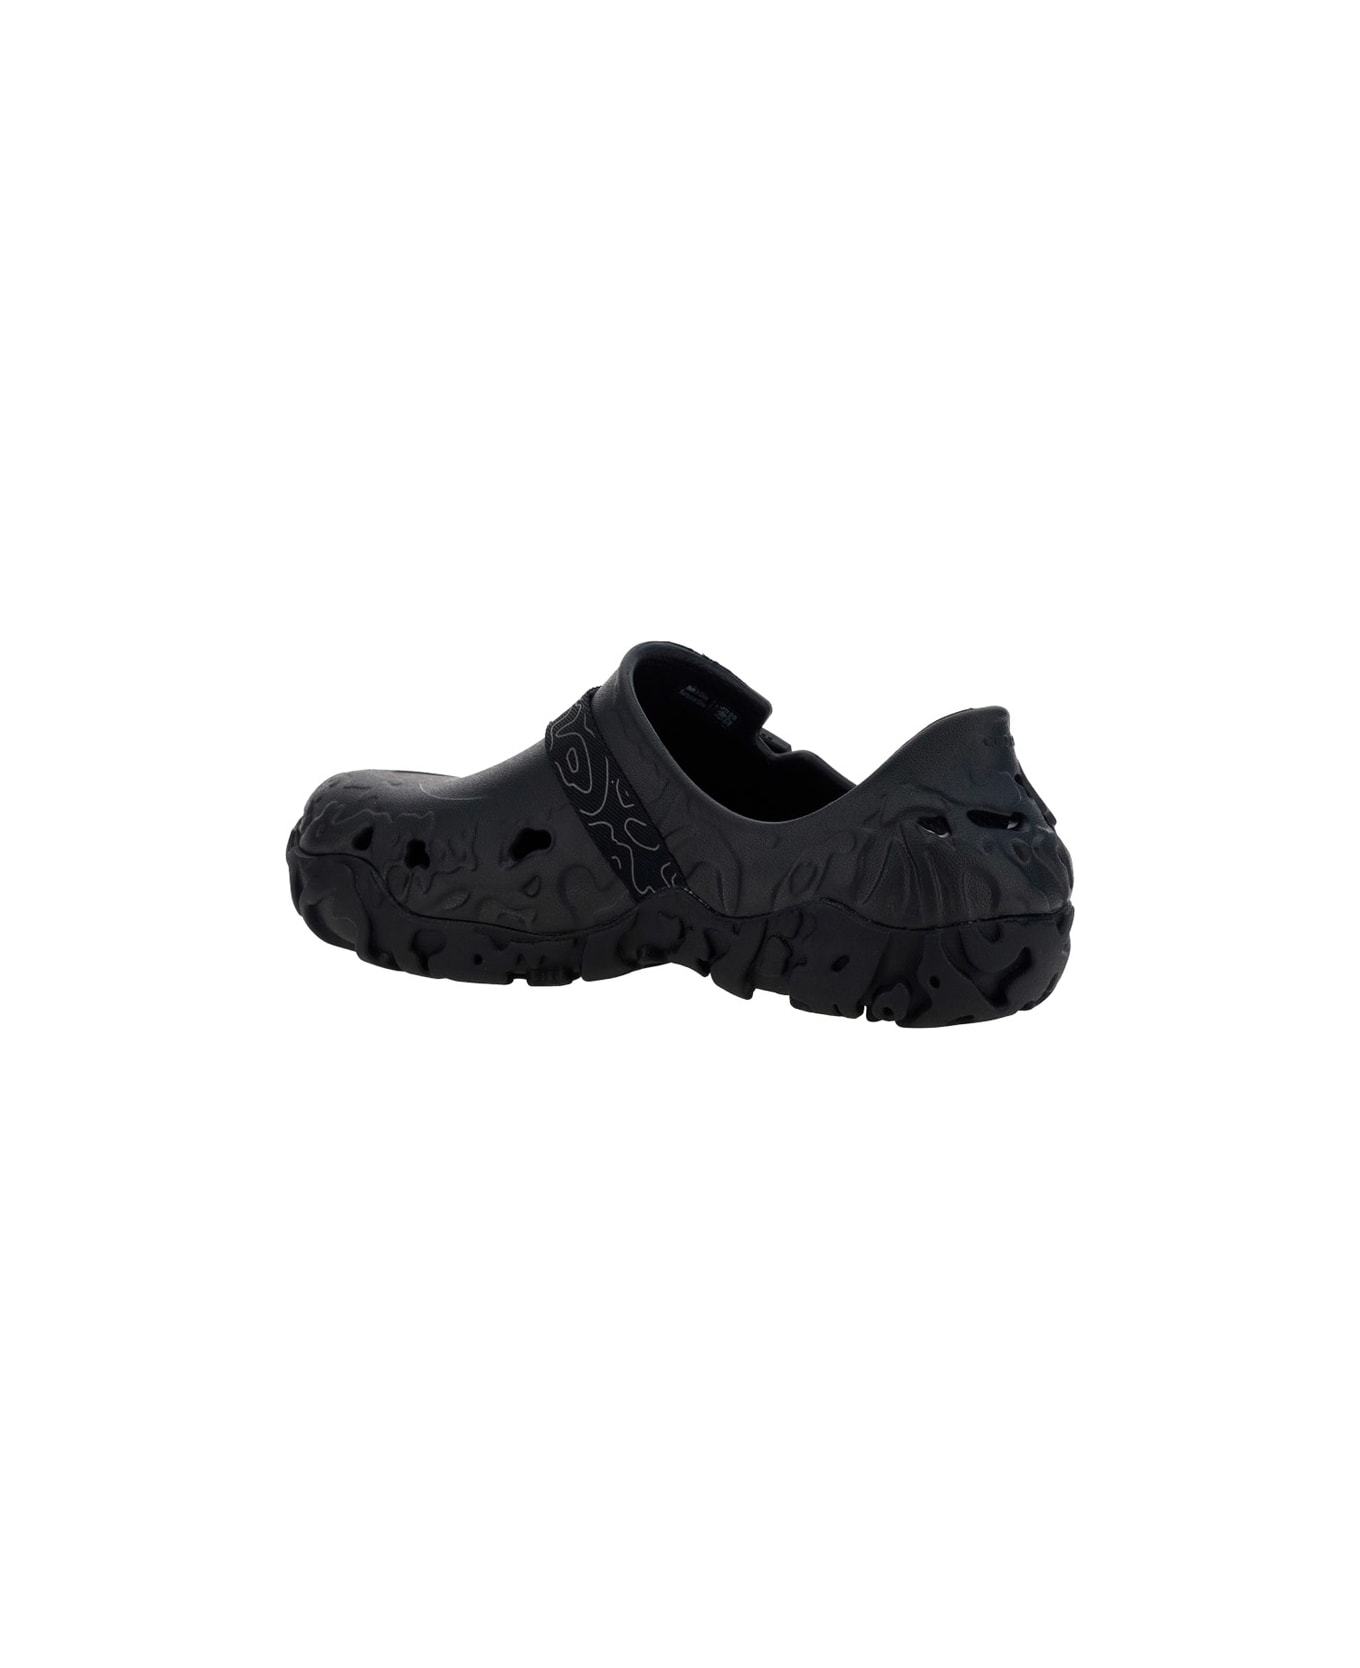 Crocs All Terrain Sandals - Black